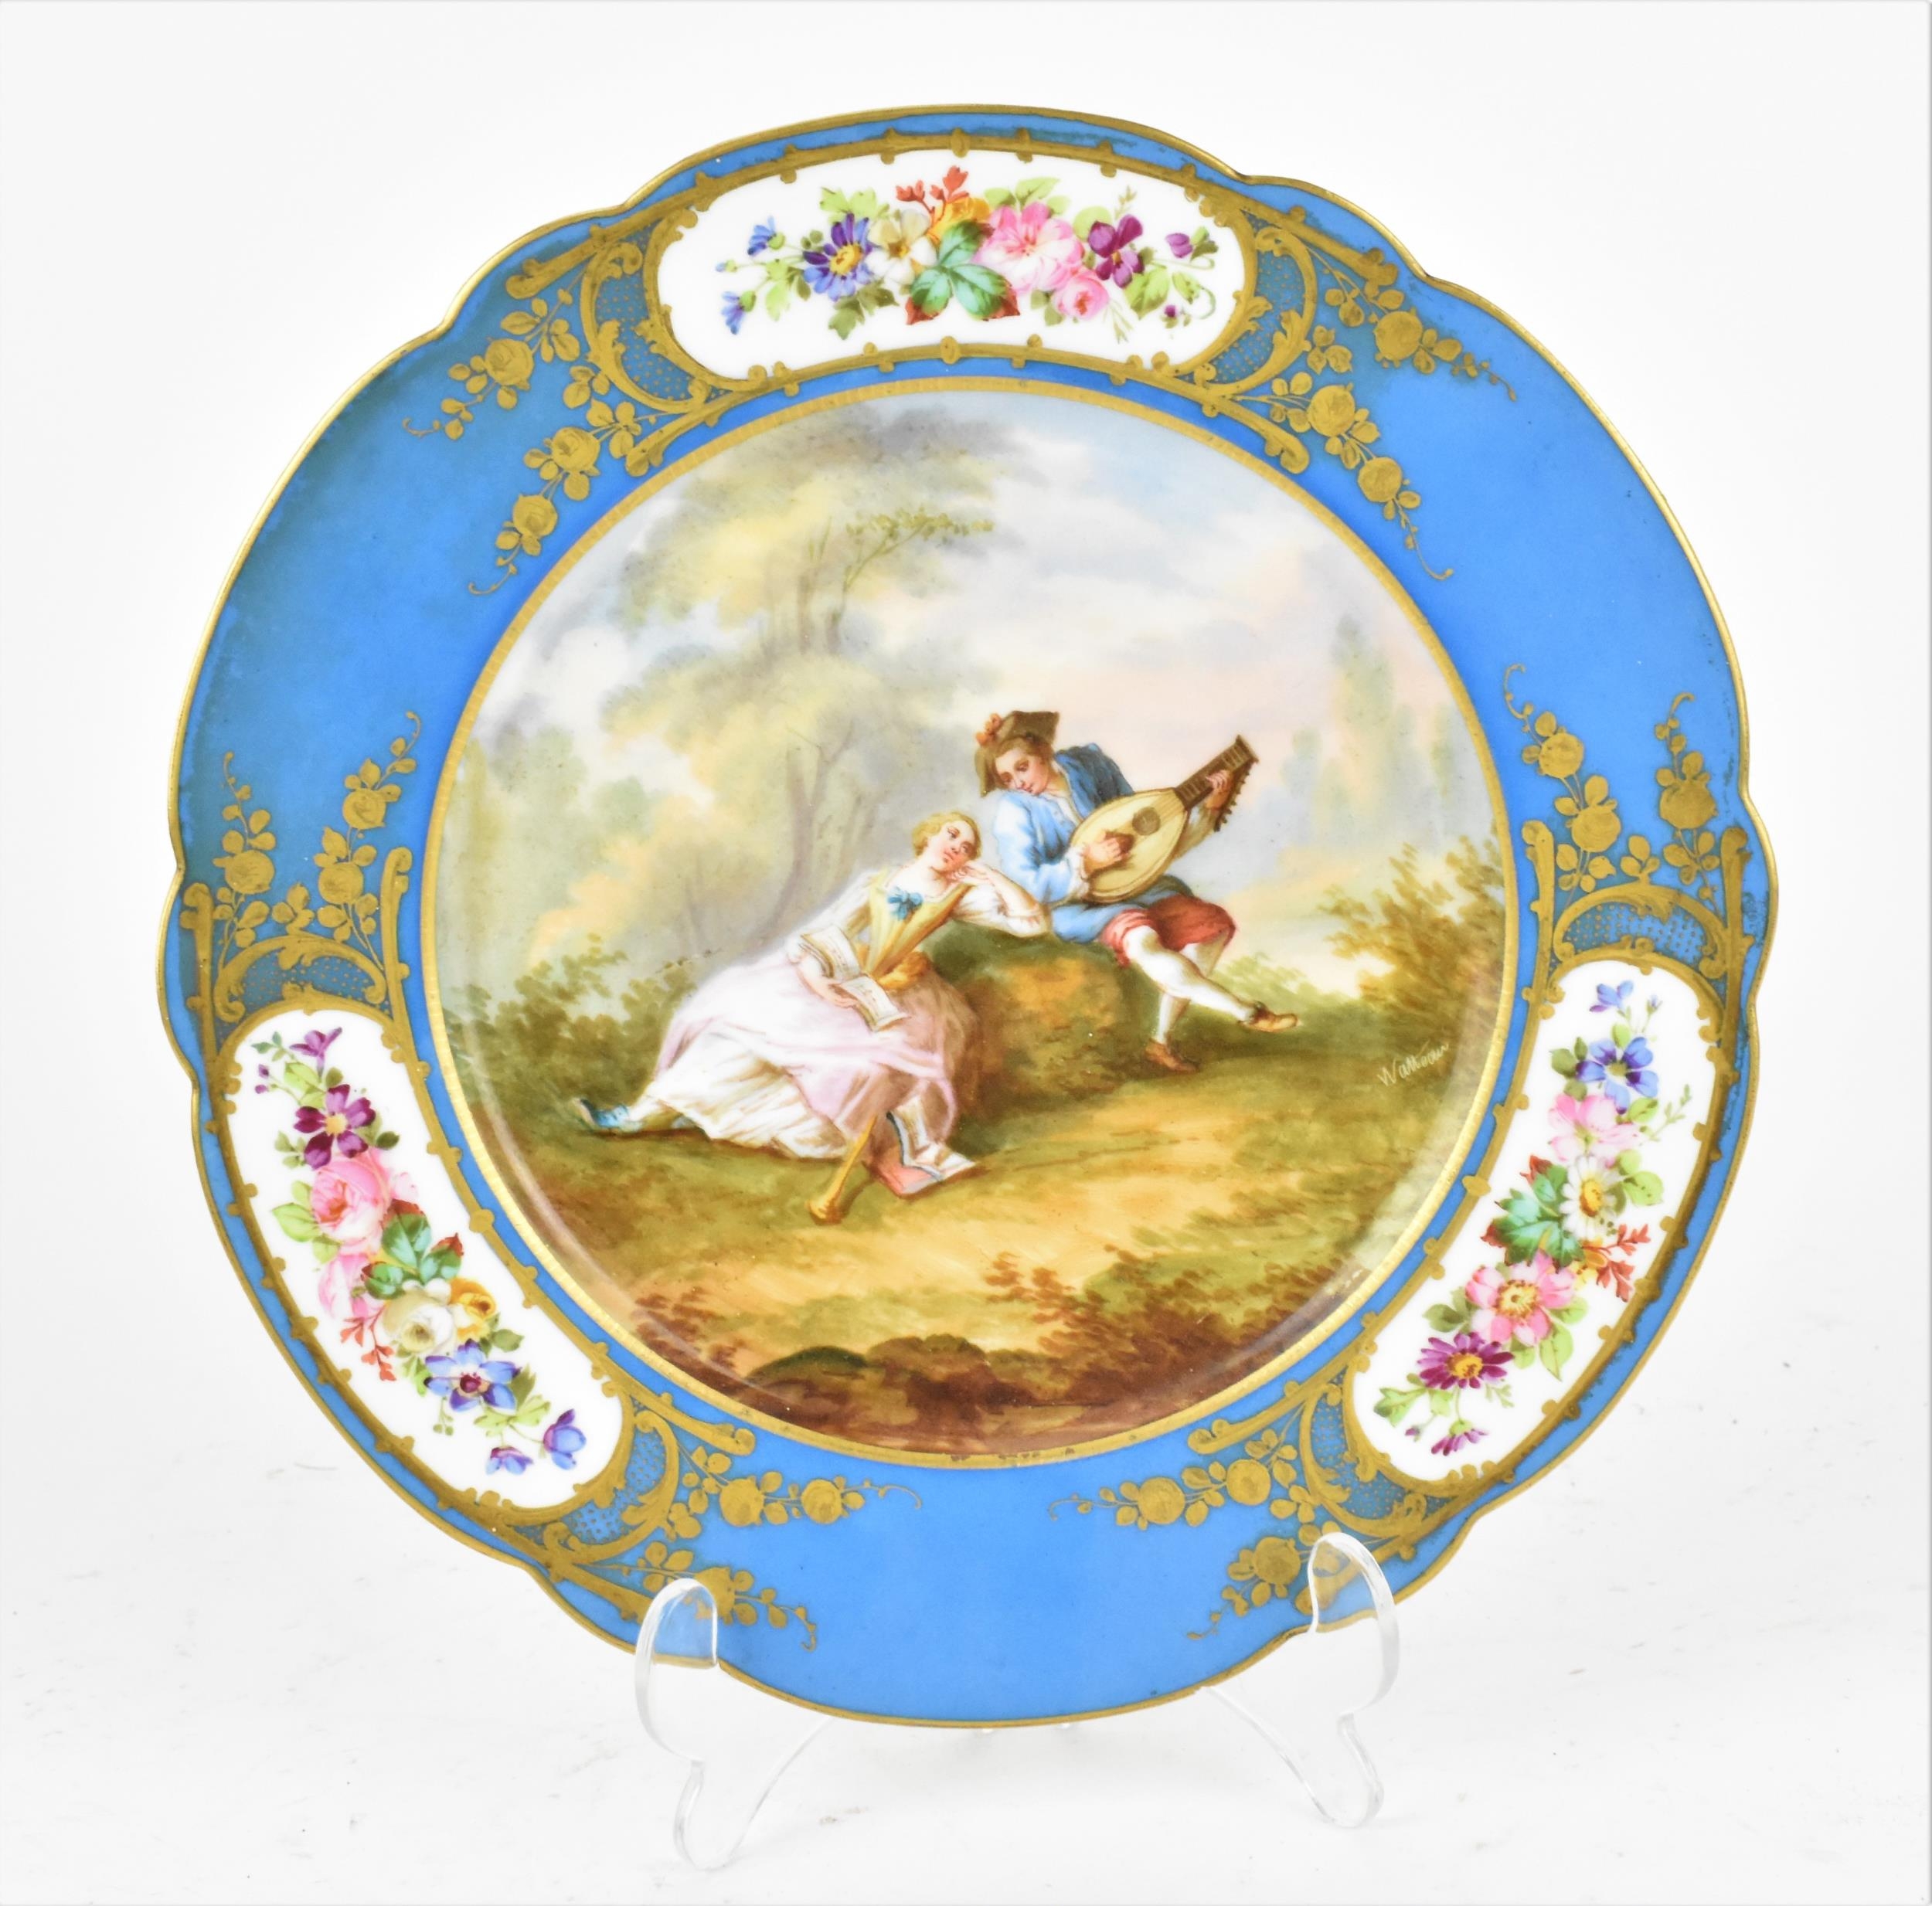 A 19th century Sevres 'Chateau des Tuileries' porcelain plate, circa 1840s, with celeste bleu